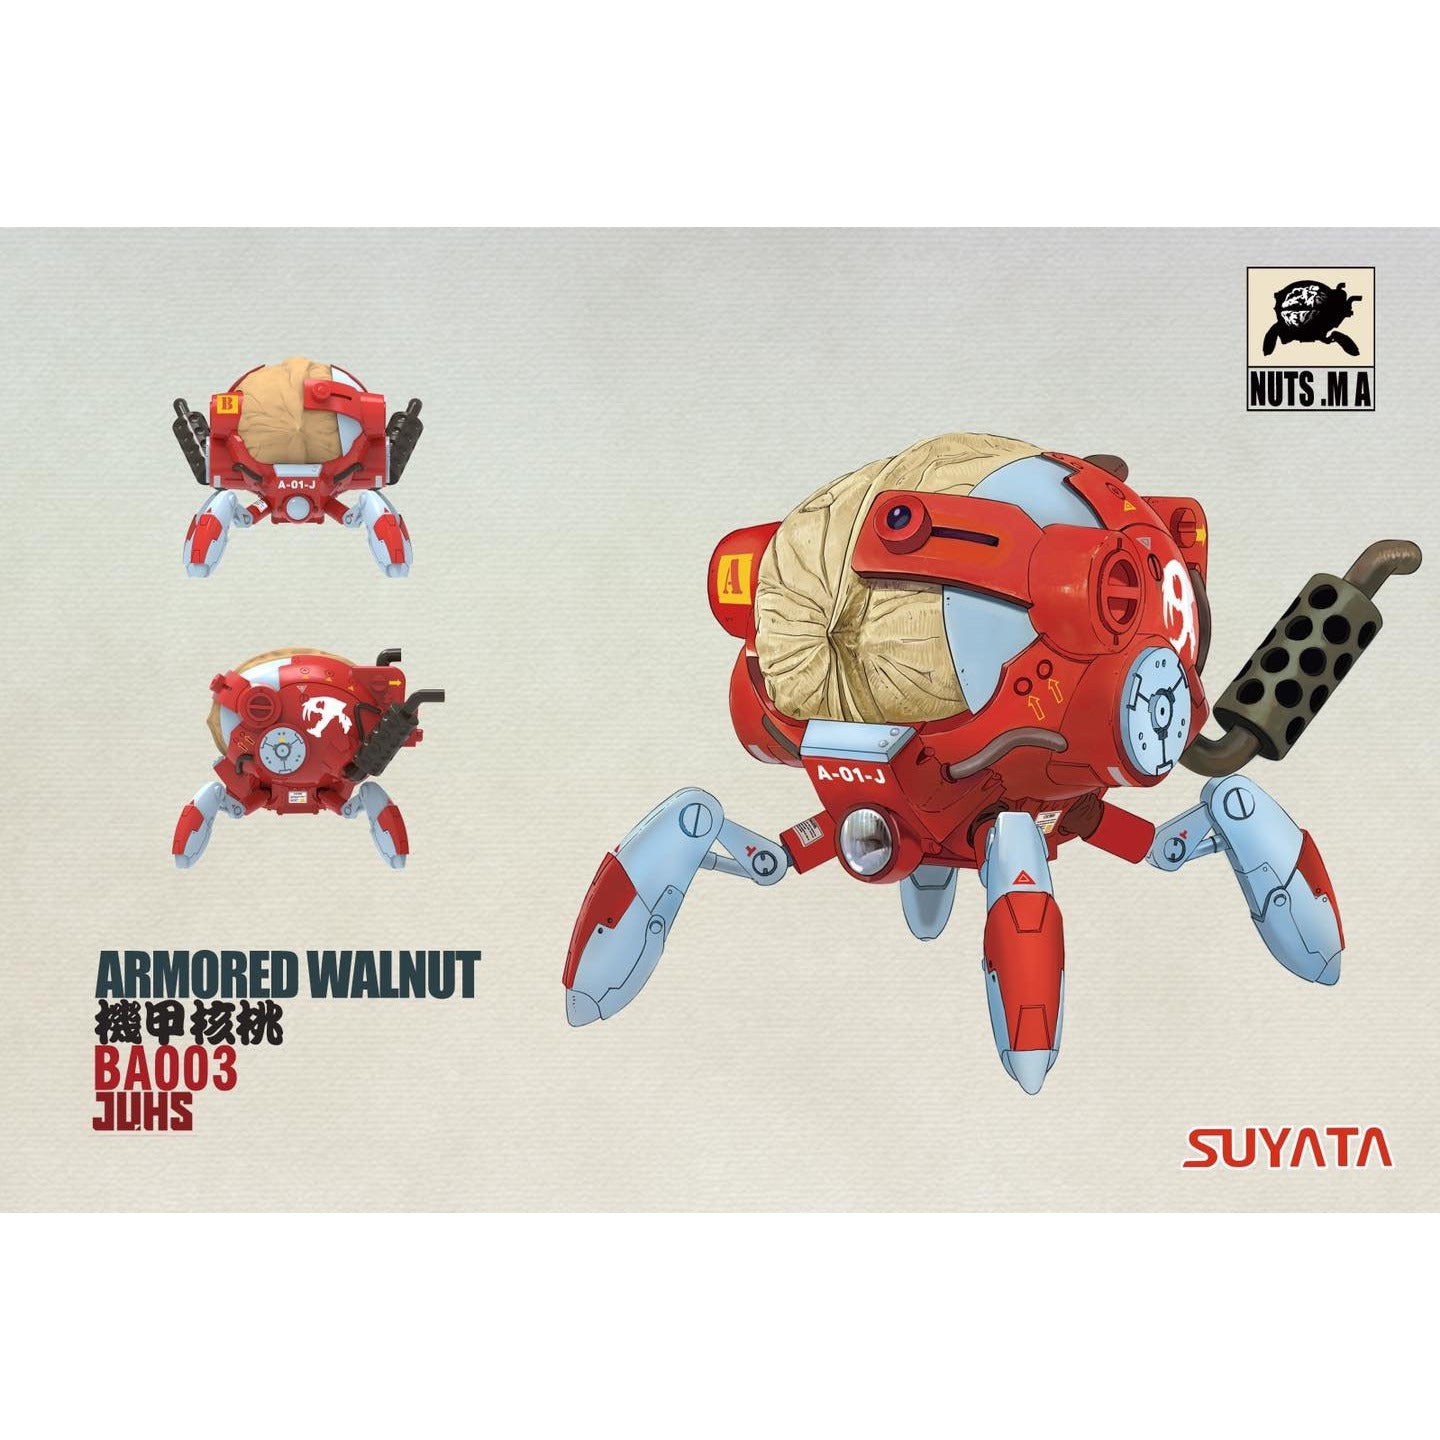 Armored Walnut #003 by Suyata